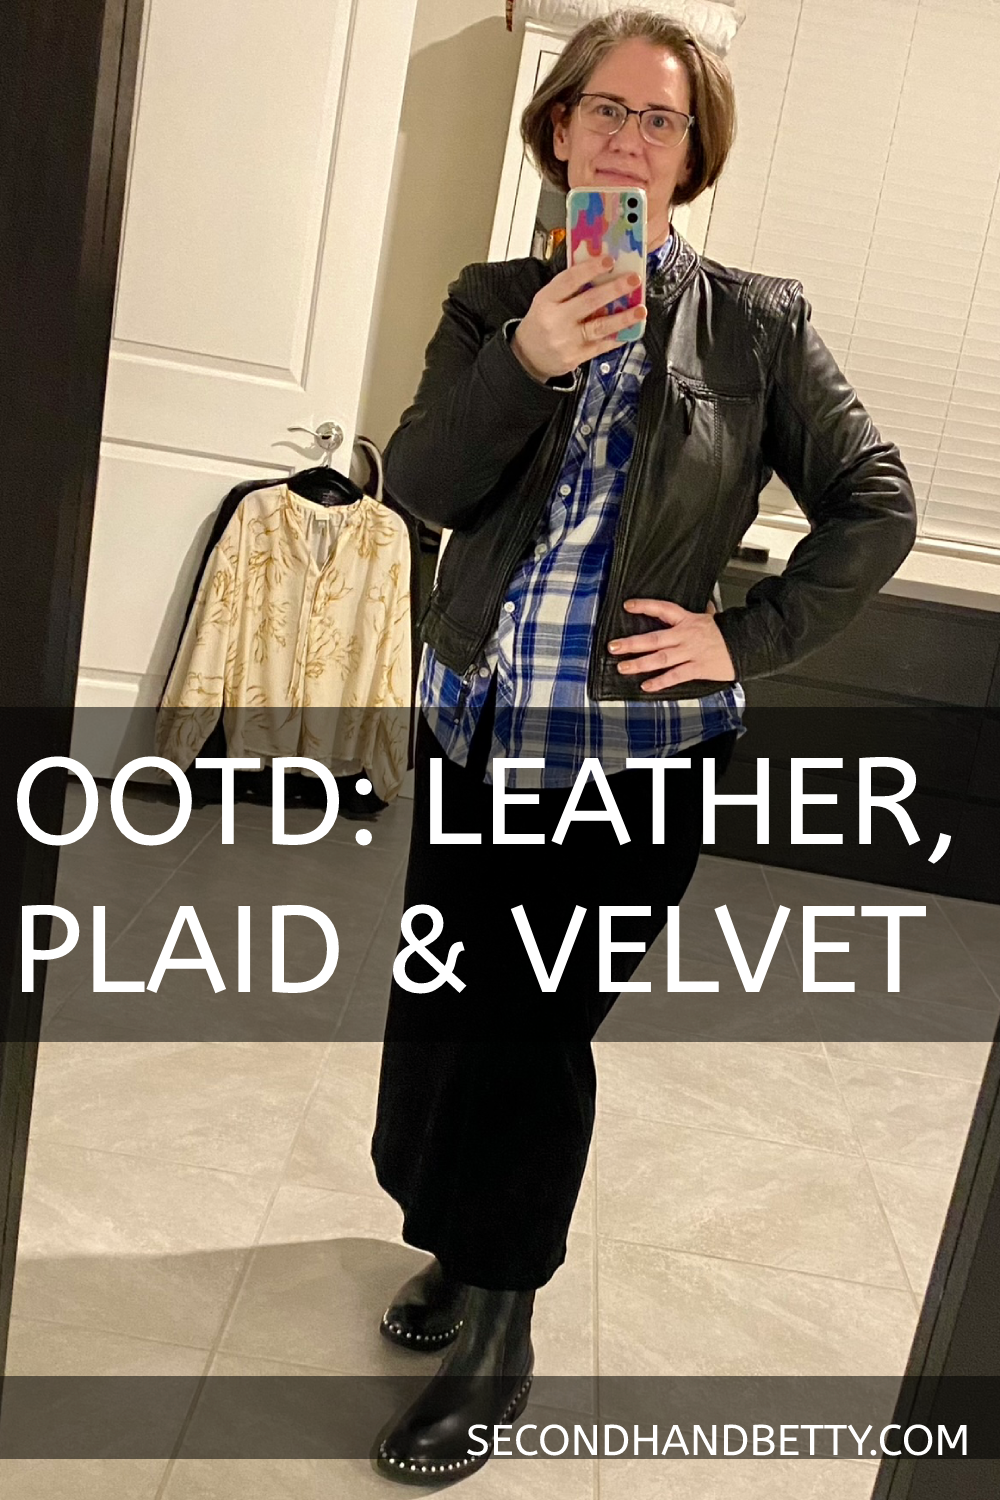 Leather, plaid & velvet